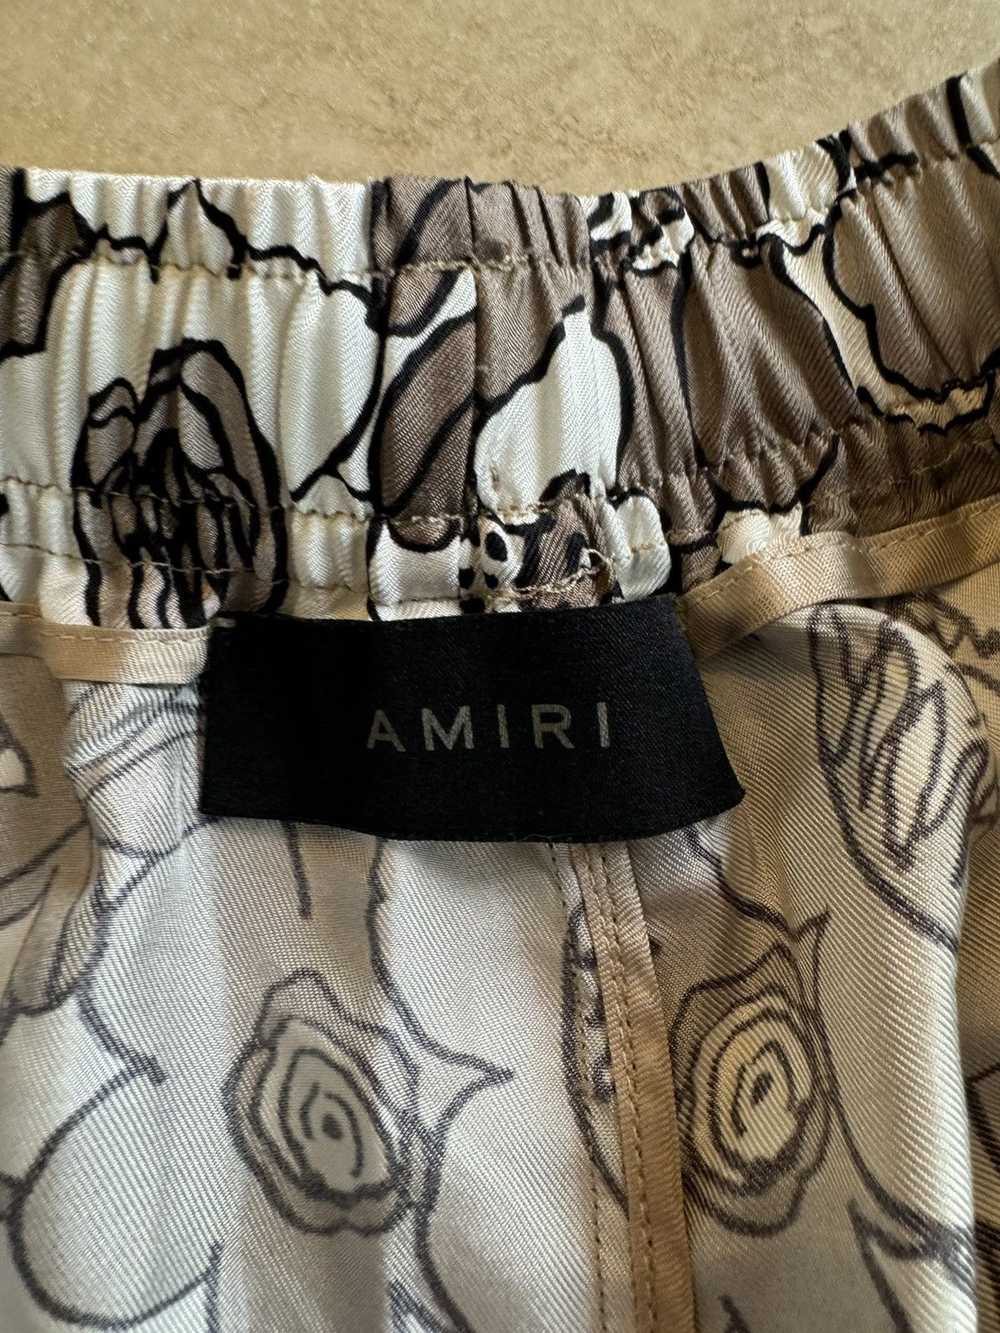 Amiri Amiri Floral Shorts size large - image 5